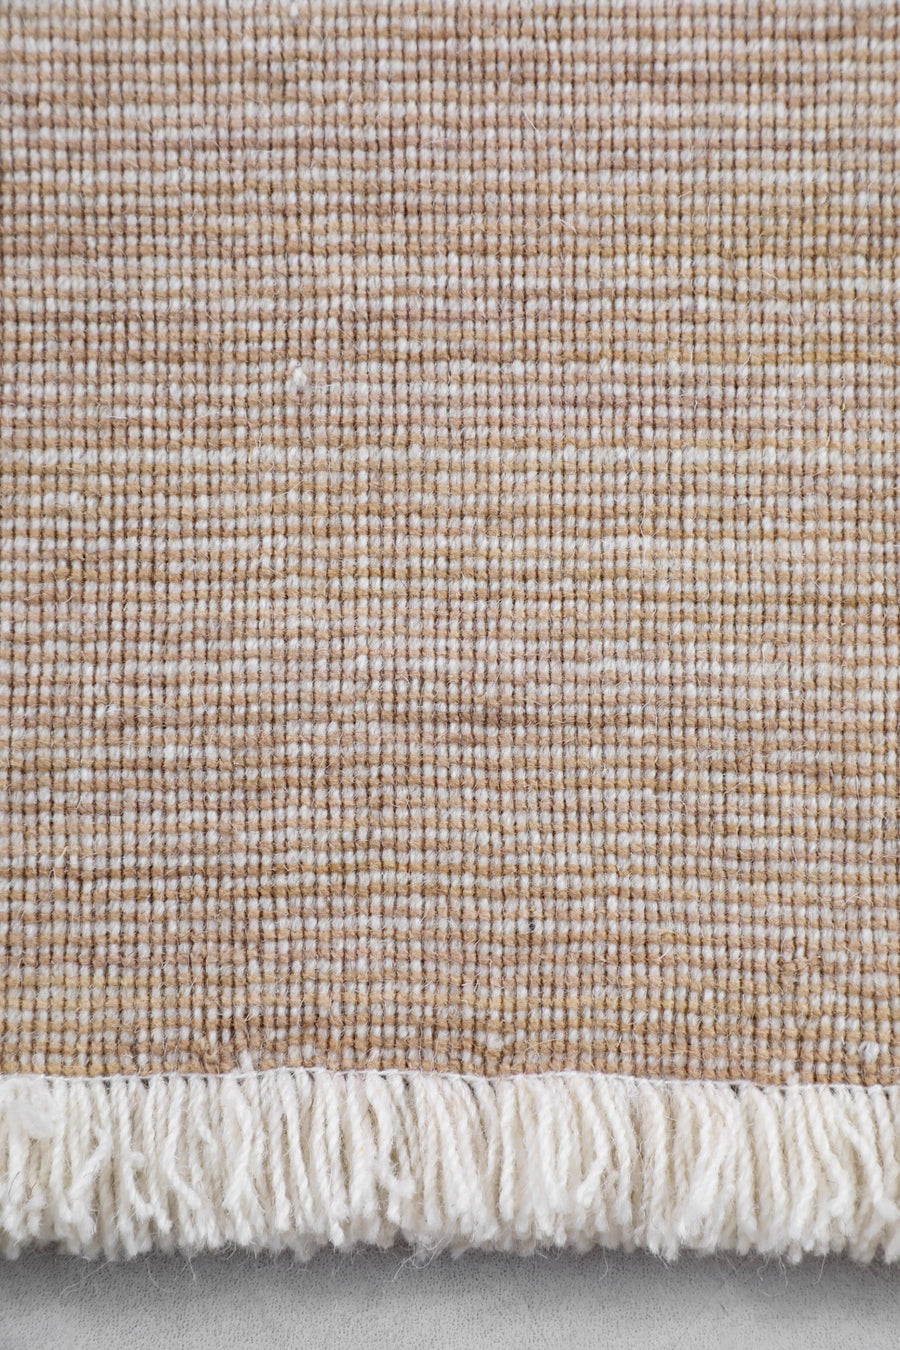 Bruges Wool Rug